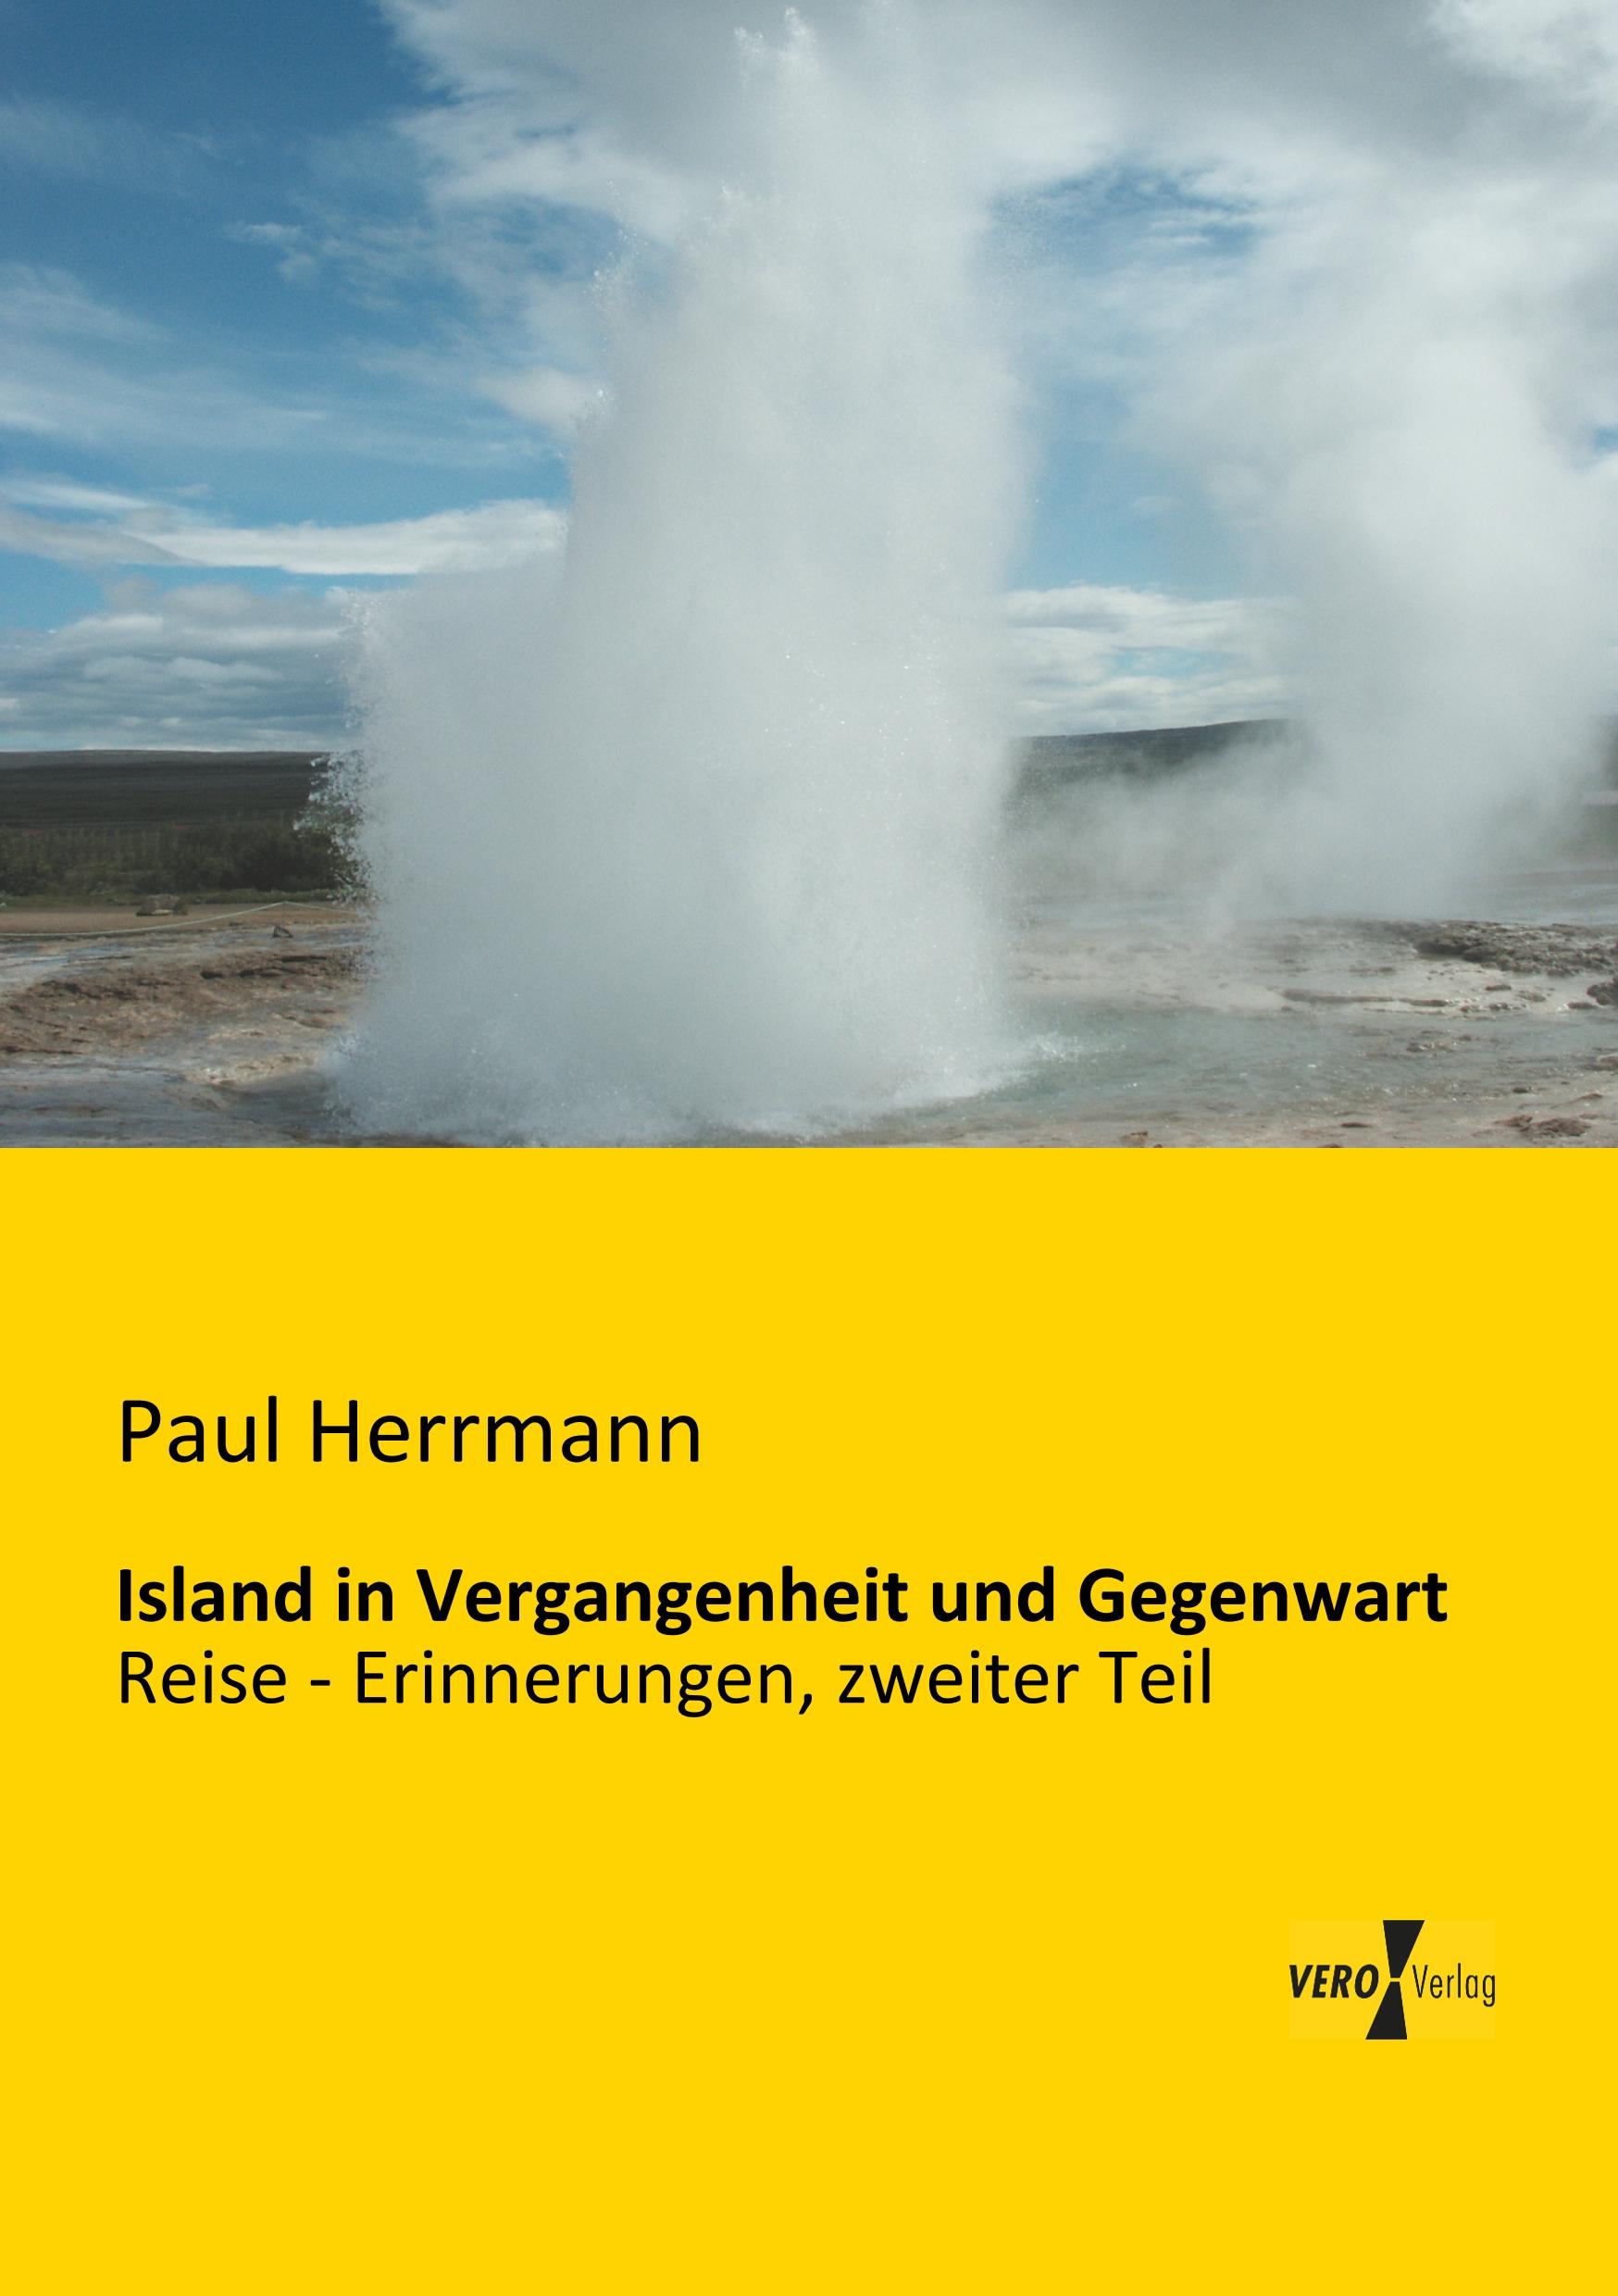 Island in Vergangenheit und Gegenwart - Herrmann, Paul